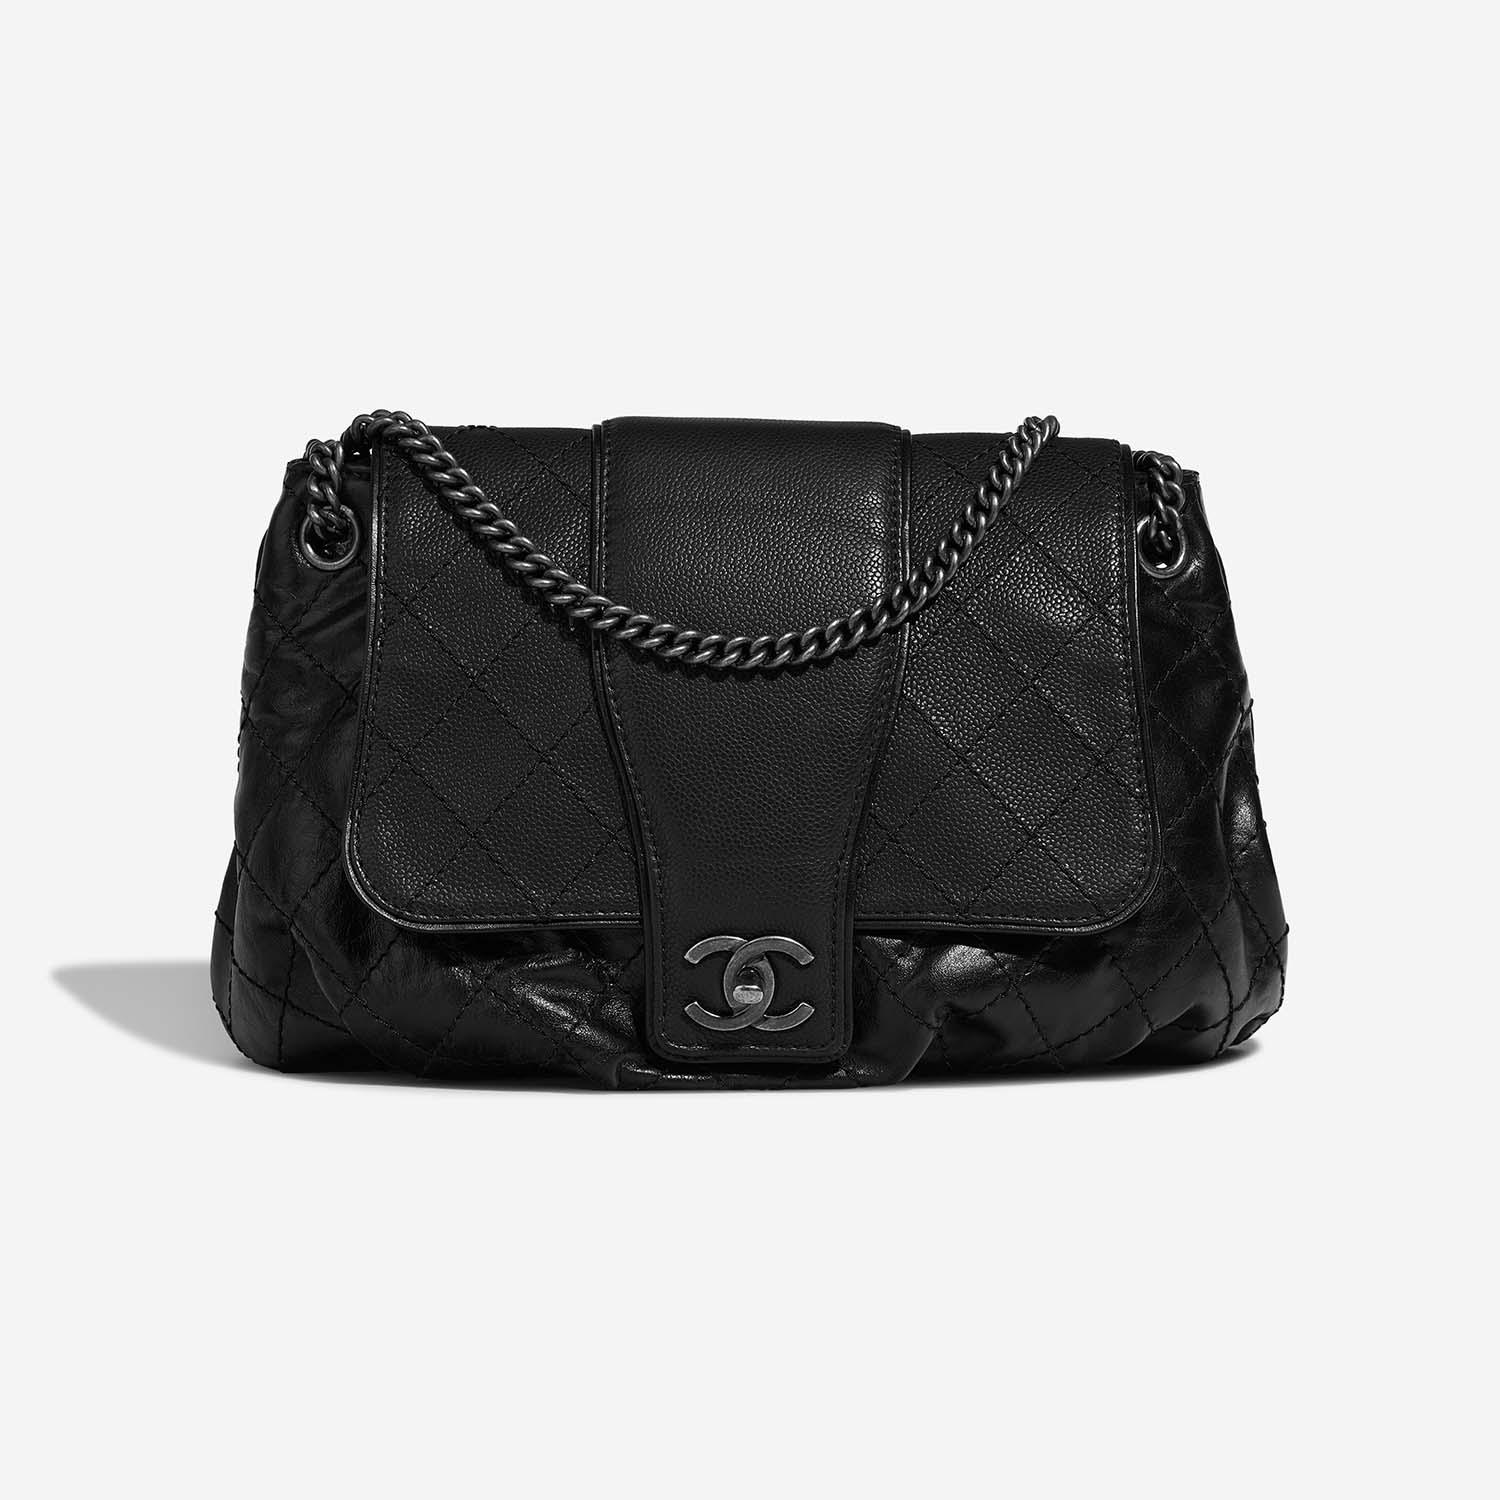 chanel black messenger bag leather